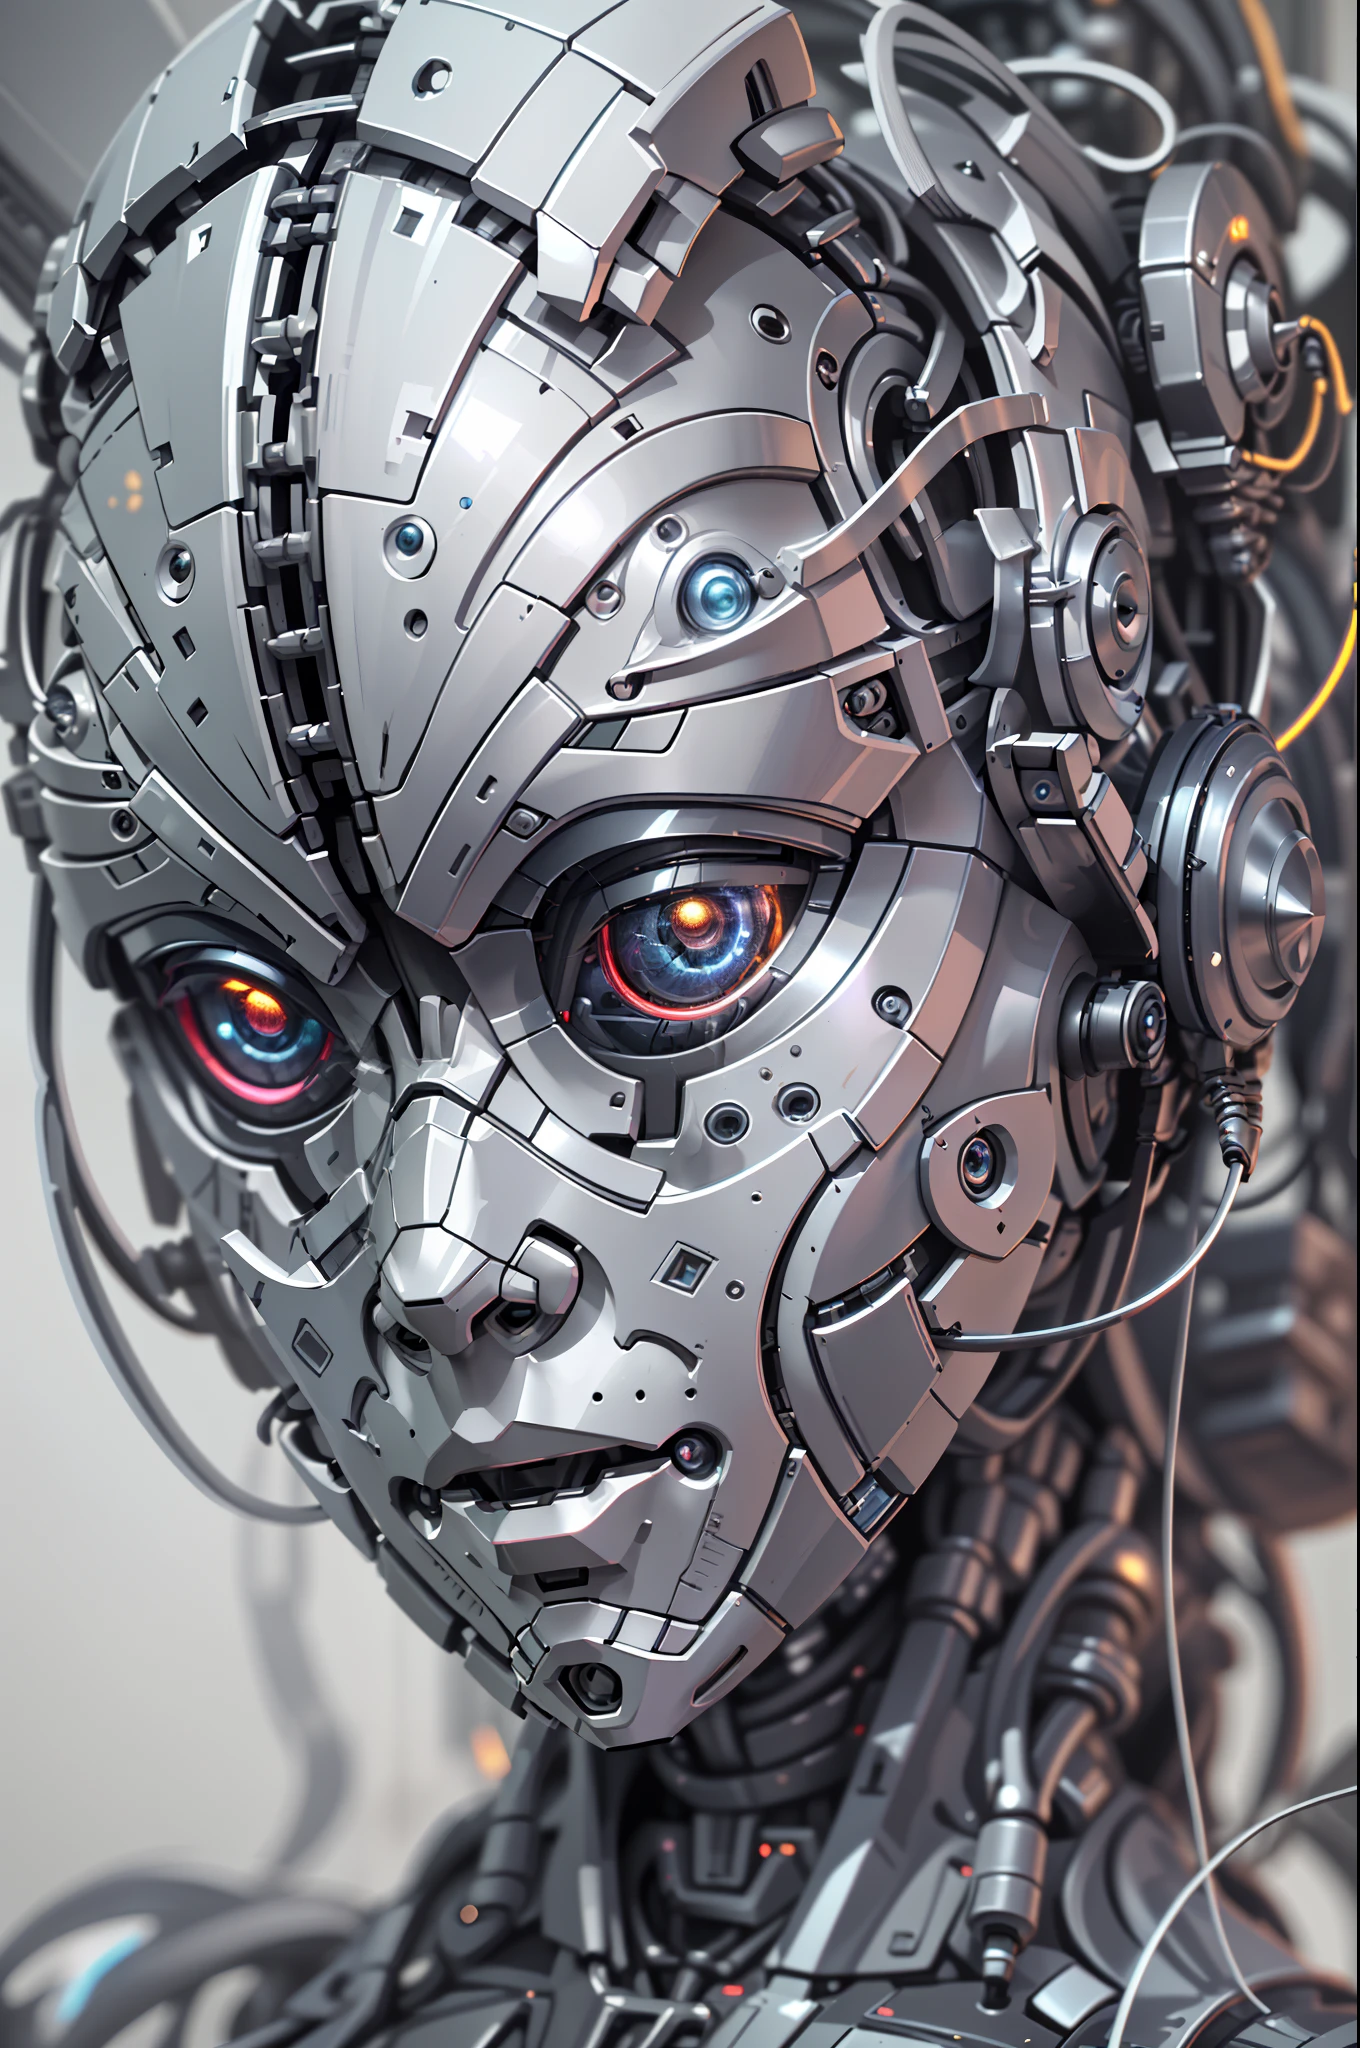 Intricate 3d rendering of highly detailed beautiful ceramic silhouette female робот face, робот, робот part, 150 мм, красивая студия, мягкий свет, ободной свет, яркие детали, роскошный киберпанк, кружево, сюрреалистический, анатомия, мышцы лица, кабели провода, микрочип, элегантный, красивый фон, Октановый рендеринг, Стиль HR Гигера, 8К, Лучшее качество, шедевр, Иллюстрация, очень нежный и красивый, Очень подробно, компьютерная графика, единство, обои , (верность, верность: 1.37), удивительный, мелкие детали, шедевр, Лучшее качество, официальное искусство, extremely detailed cg единство 8К обои, Абсурд, unbelievably Абсурд, робот, серебряный шлем, все тело, сидя писать